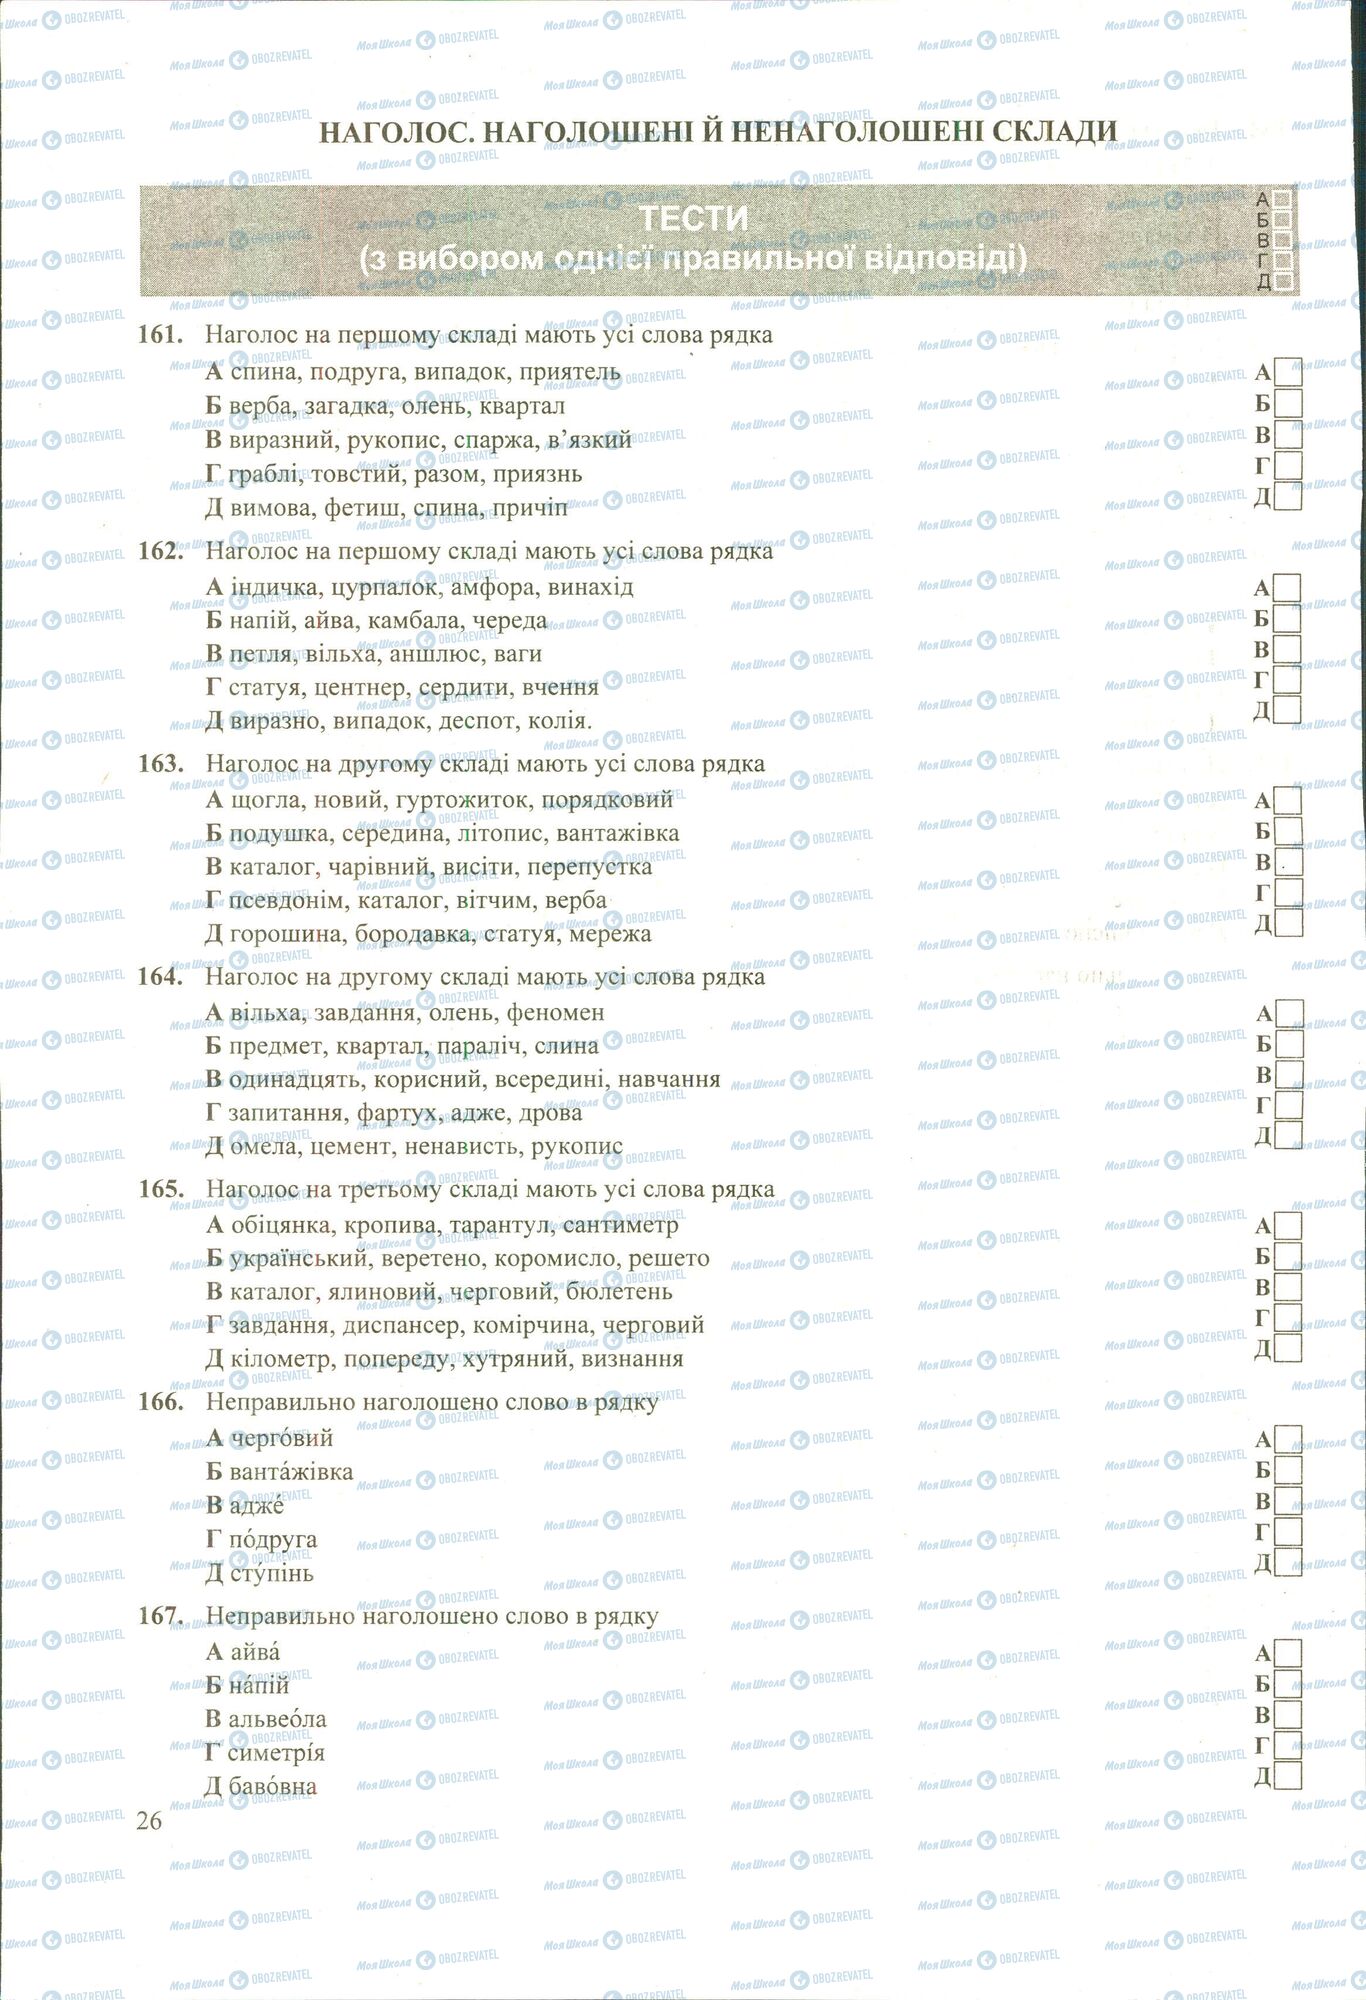 ЗНО Укр мова 11 класс страница 161-167